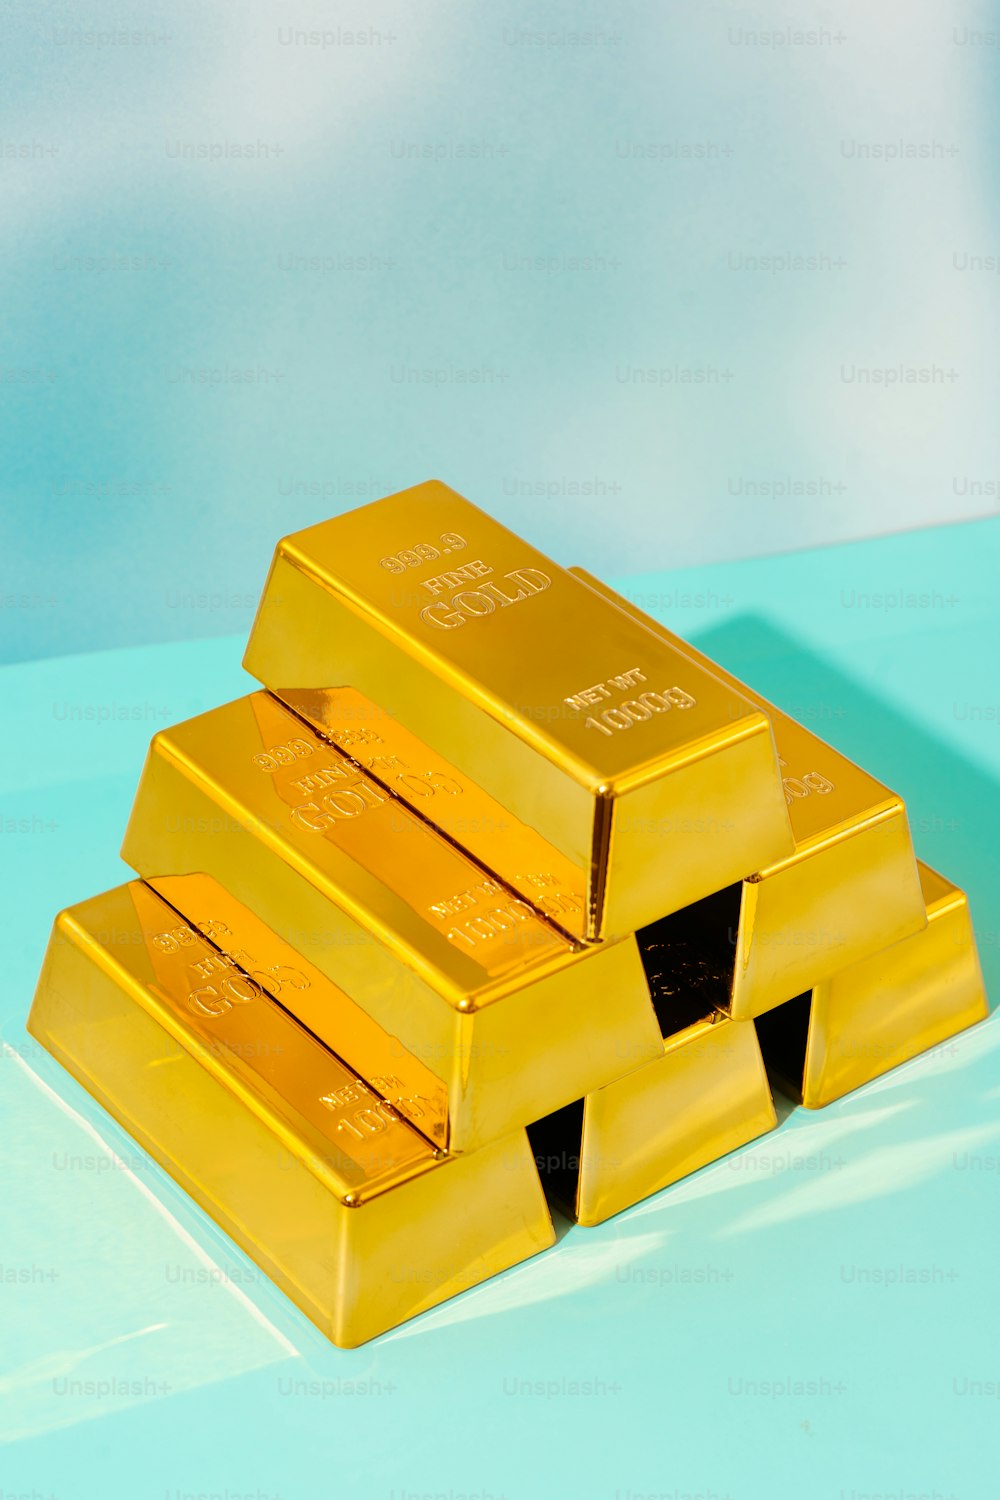 trois lingots d’or empilés les uns sur les autres